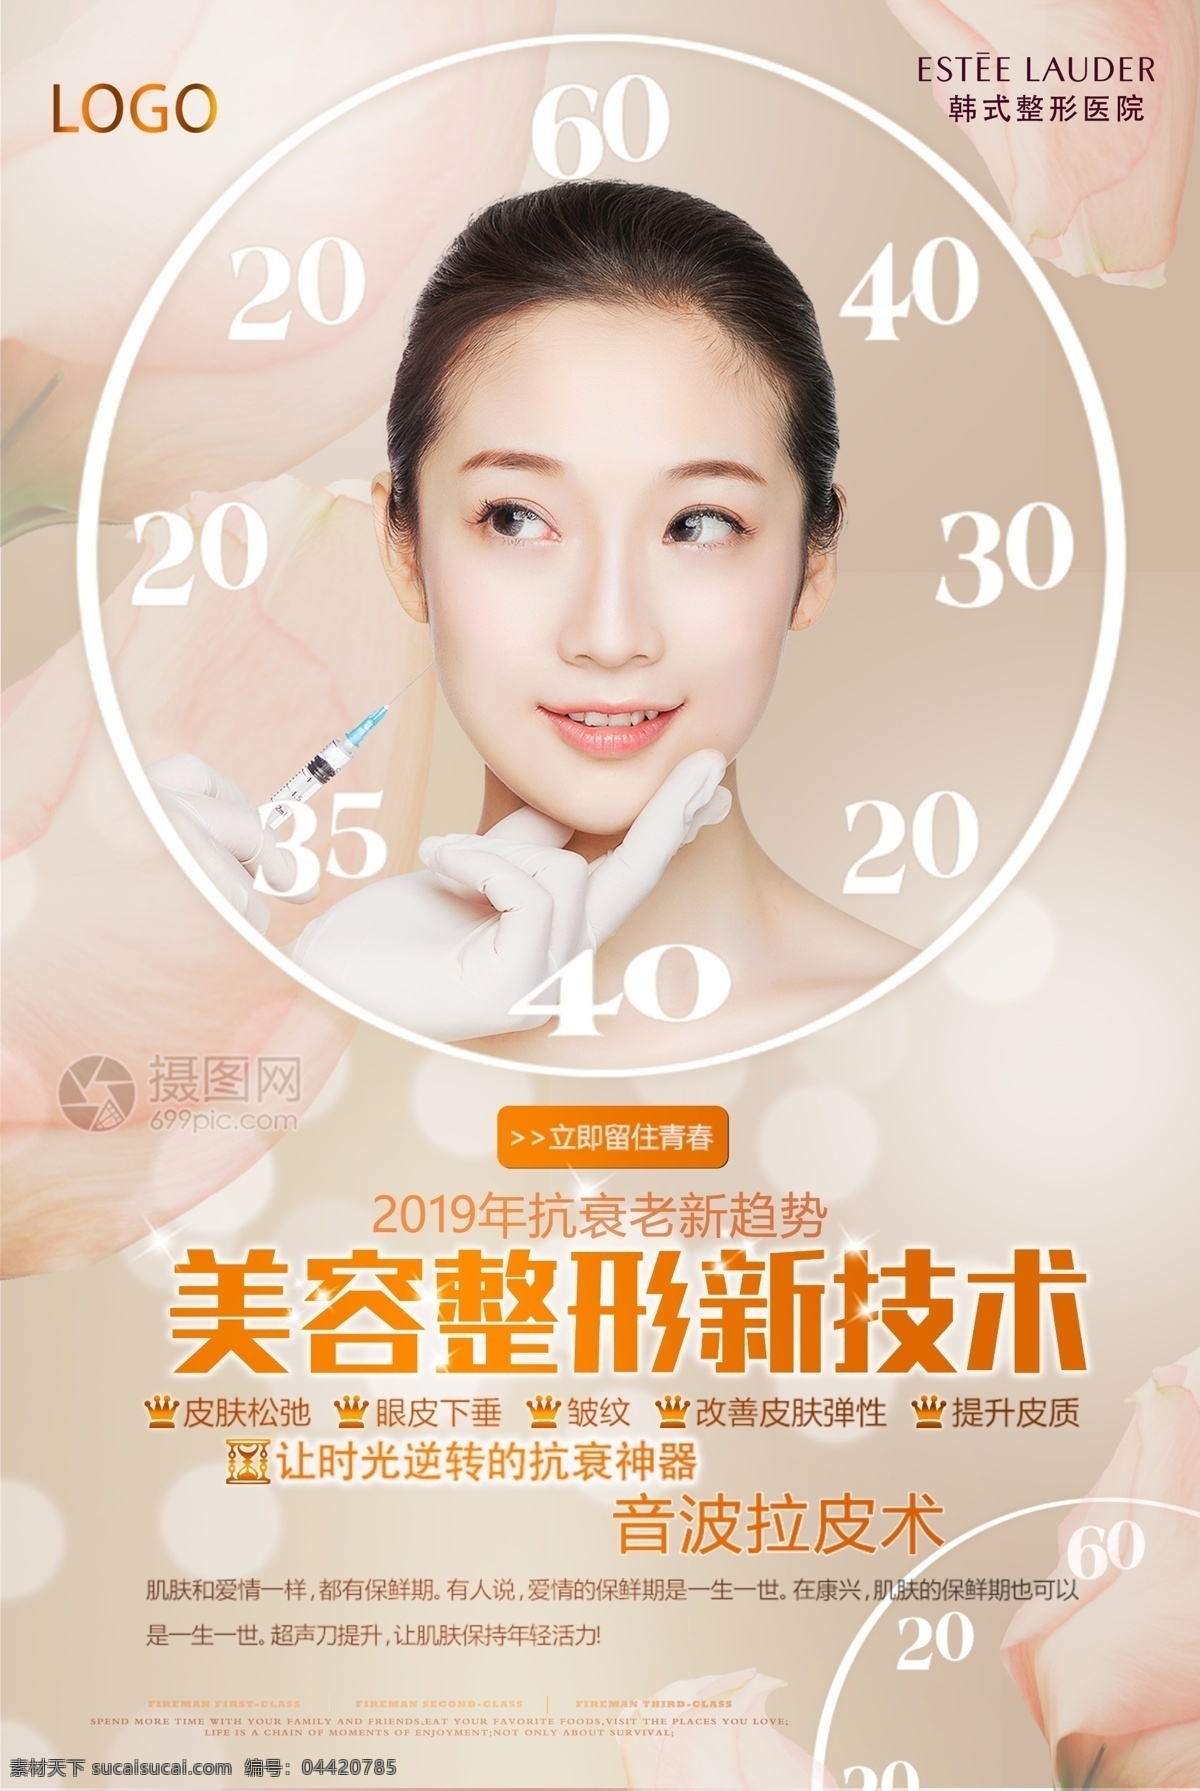 美容 医 美 宣传海报 整形 新技术 立即留住青春 音波 拉皮术 医美 美容整形 医疗美容